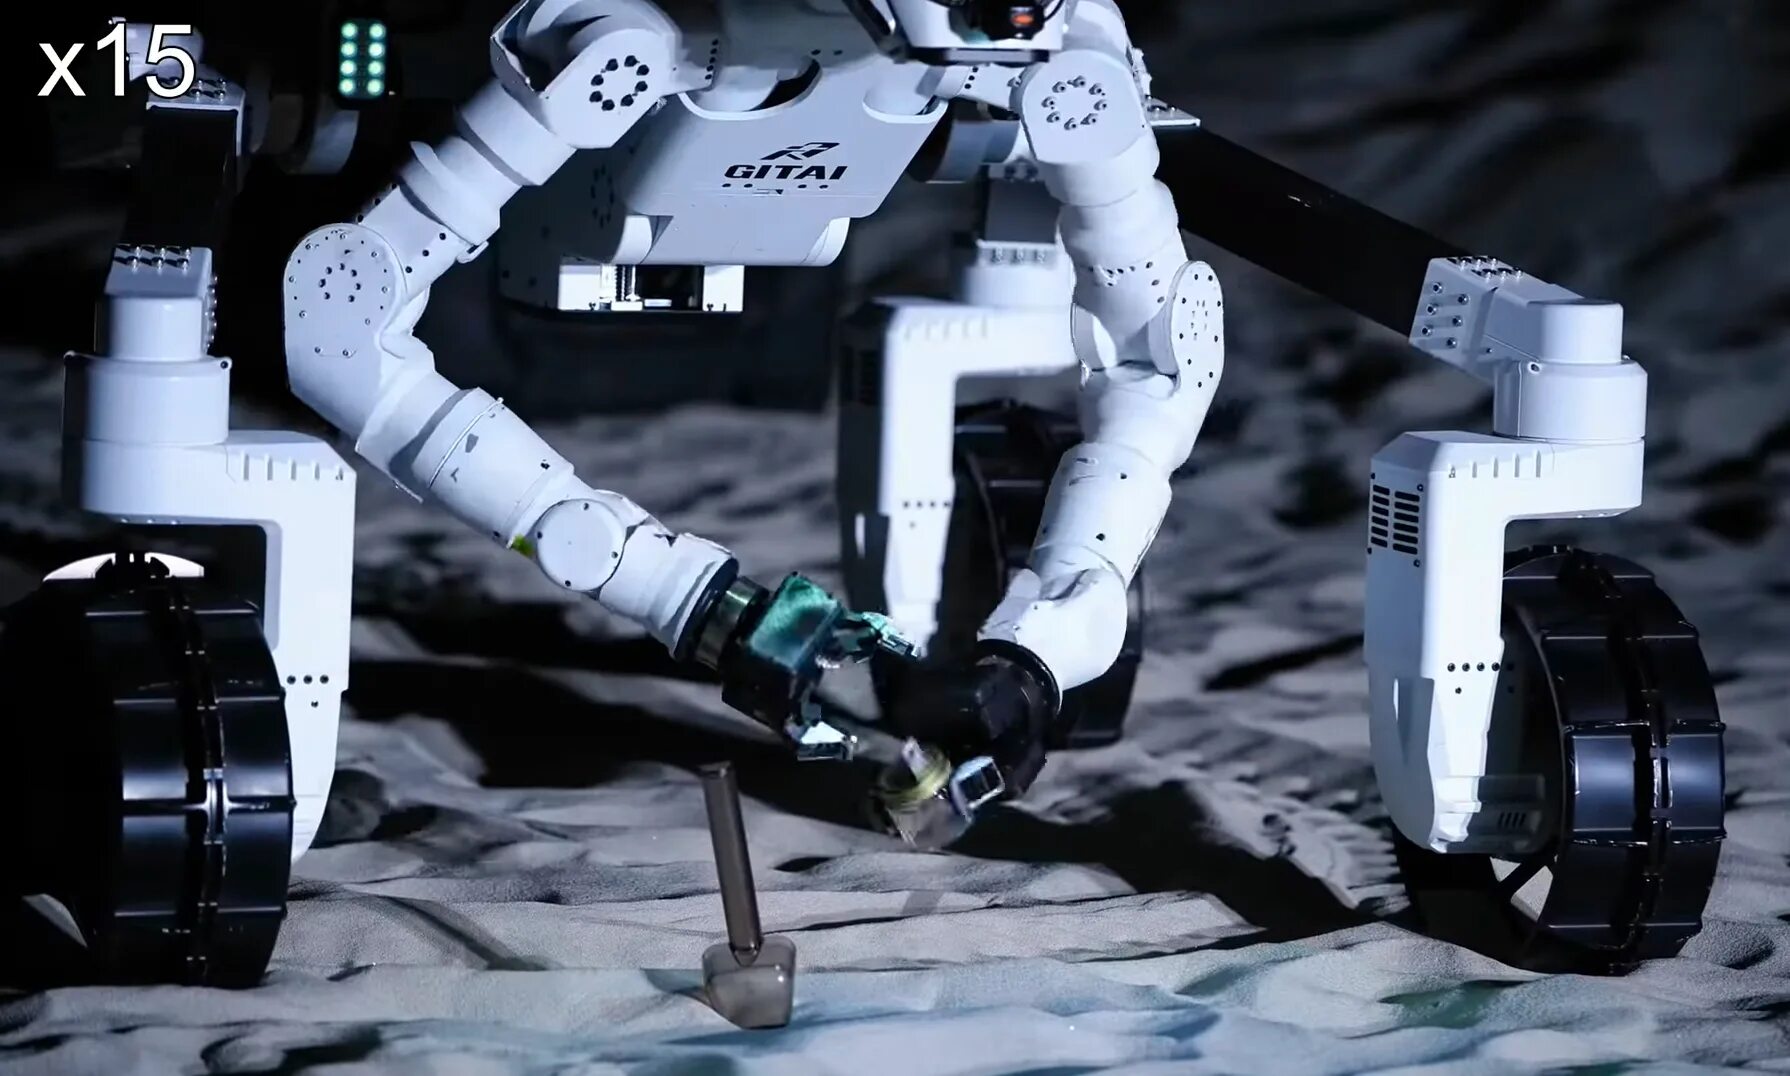 Moon сборки. Robotic Rover. Космороботы. Lunar Robot. Cue Robot — робот с наглым характером.